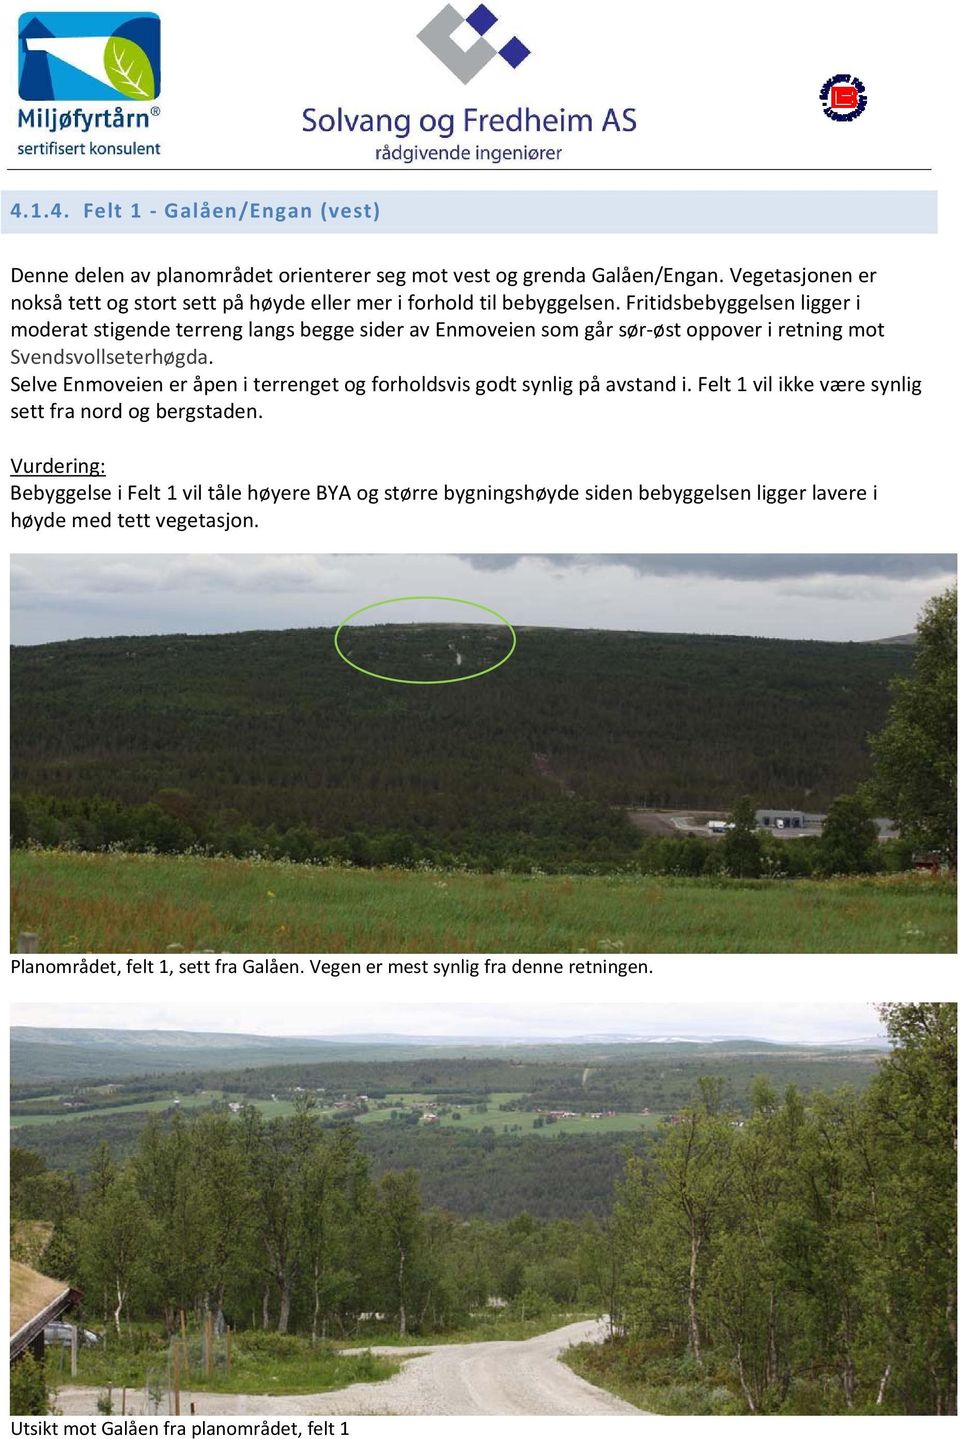 Fritidsbebyggelsen ligger i moderat stigende terreng langs begge sider av Enmoveien som går sør øst oppover i retning mot Svendsvollseterhøgda.